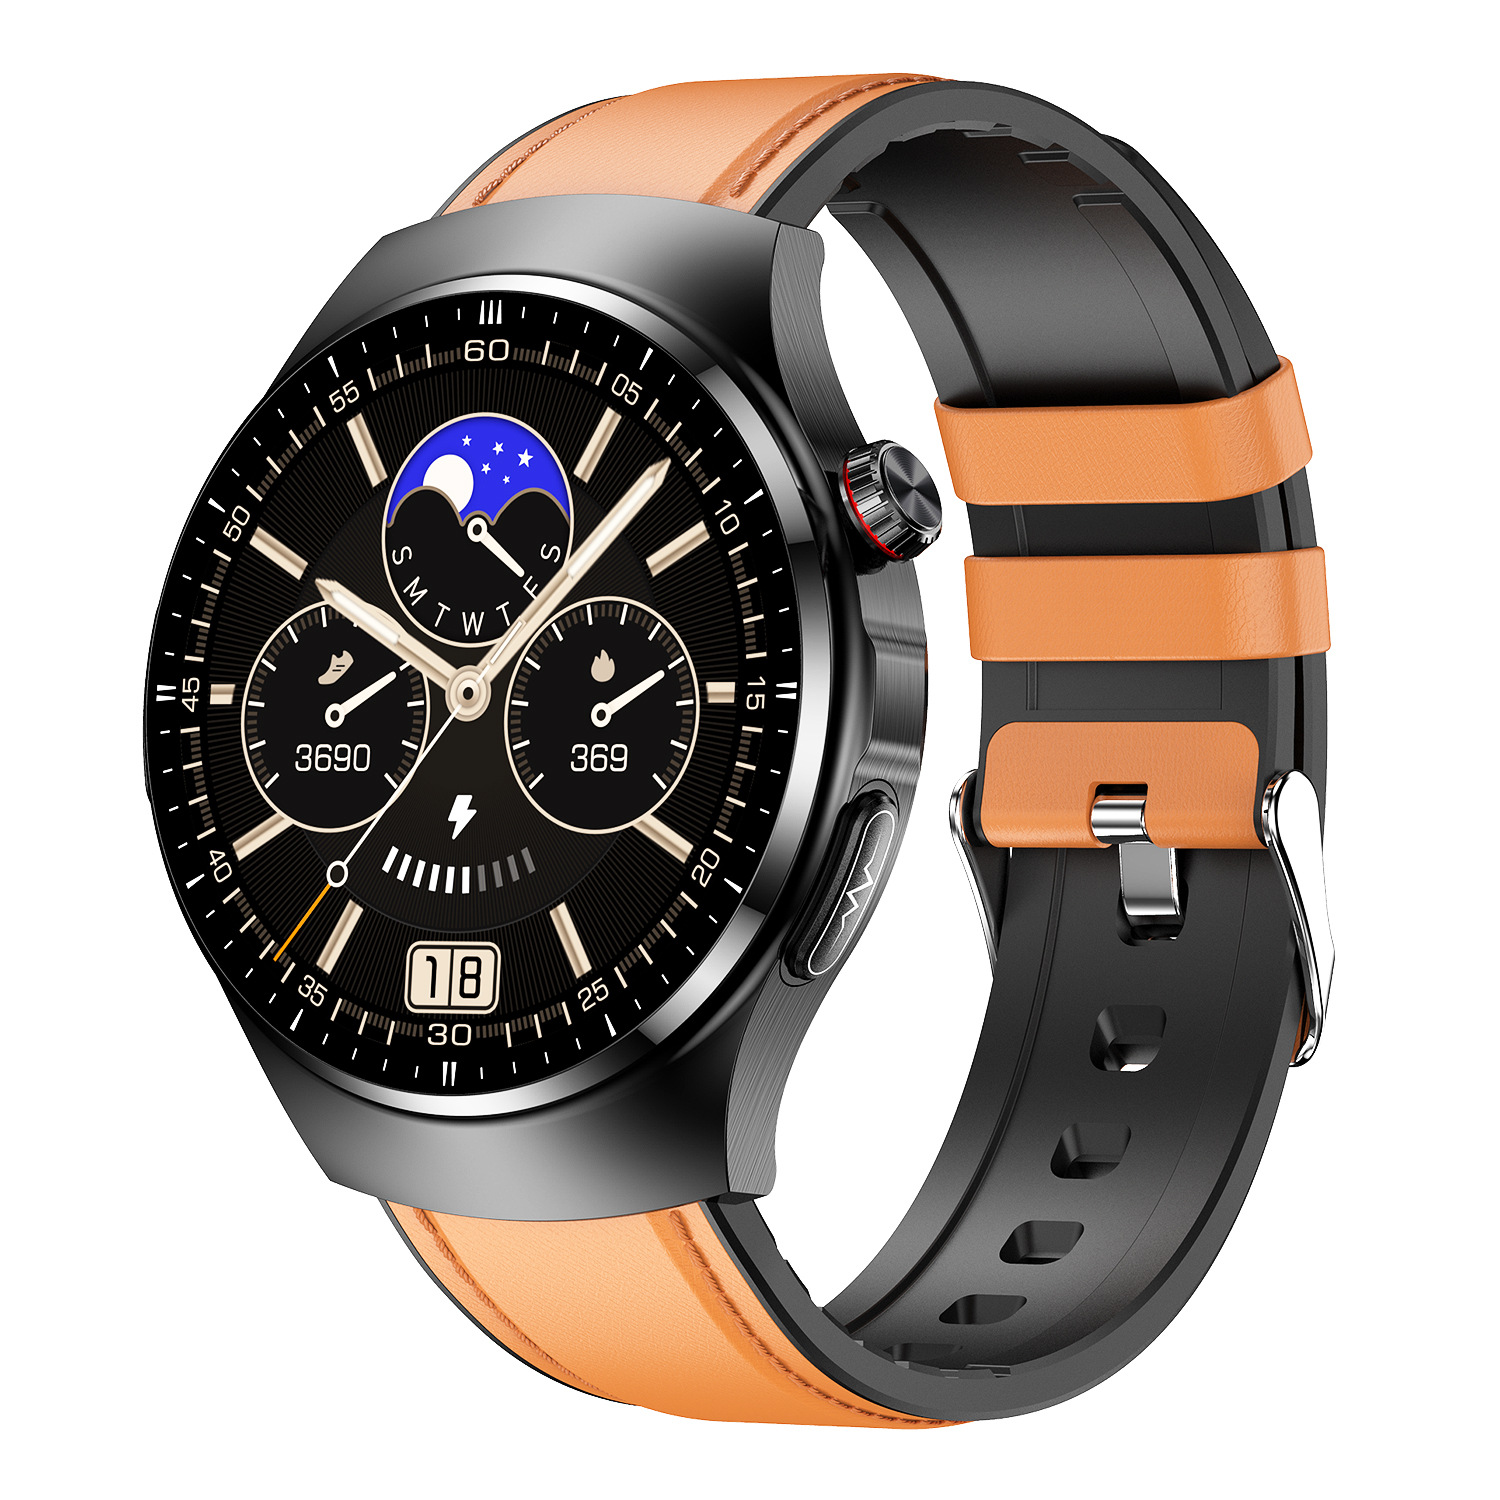 Smartwatch Gesundheit für Ihre mehr - BRIGHTAKE Umfassendes und Smartwatch Braun Leder, Gesundheitsmonitoring